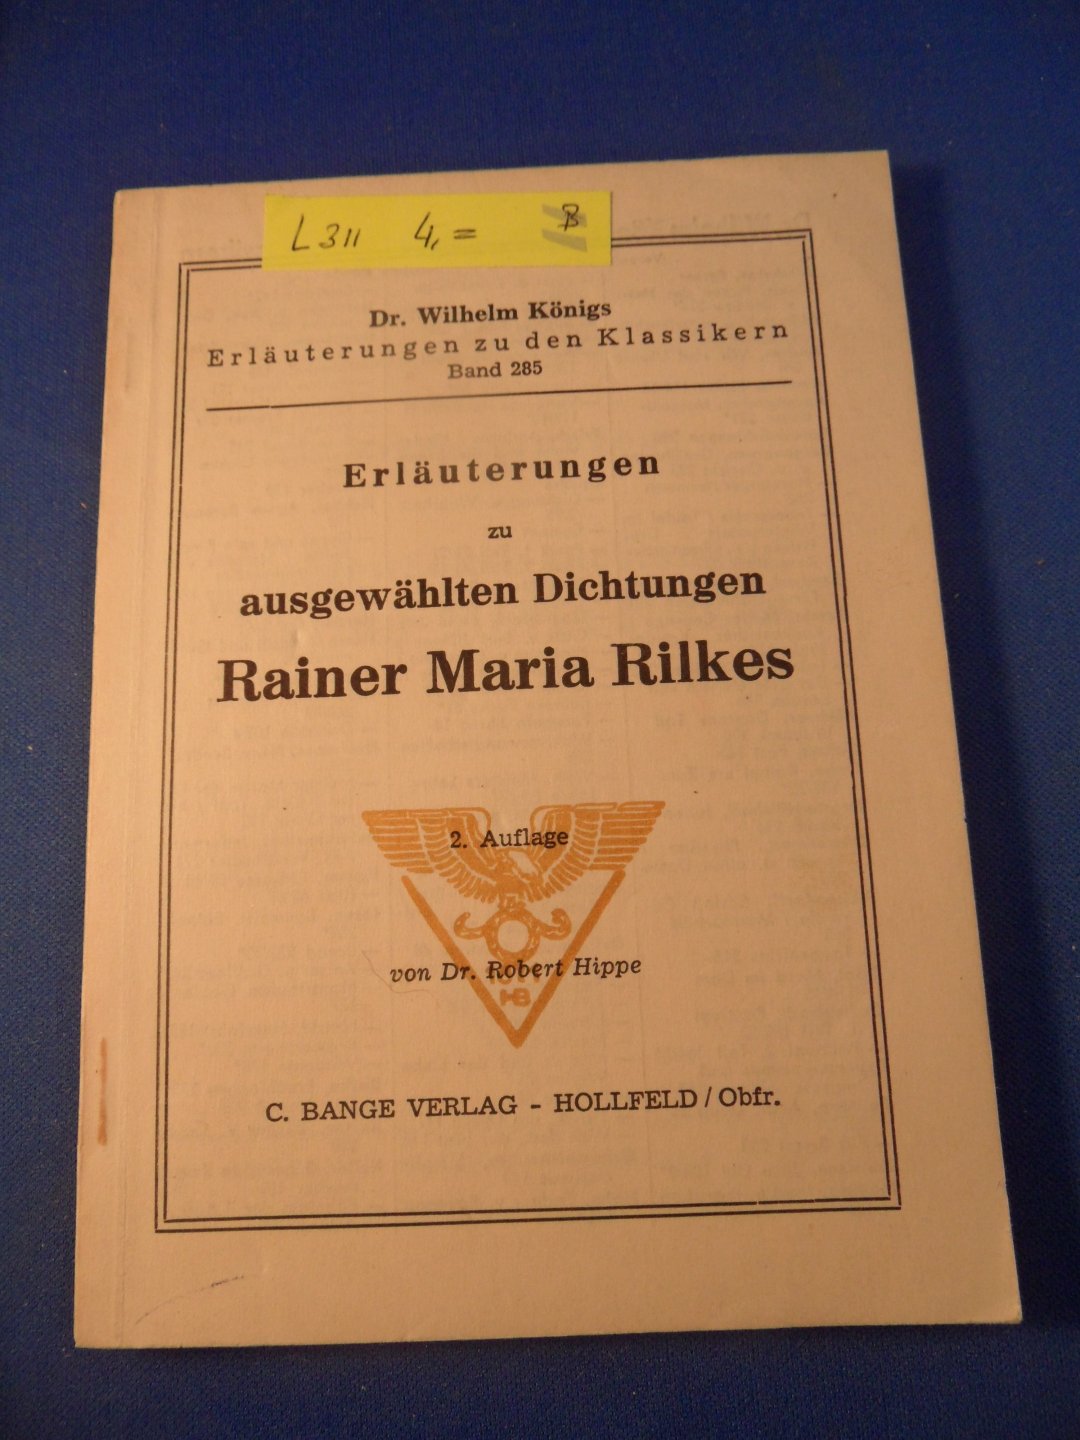 Hippe, dr. Robert & Königs, dr. Wilhelm - Erläuterungen zu ausgewählten Dichtungen Rainer Maria Rilke